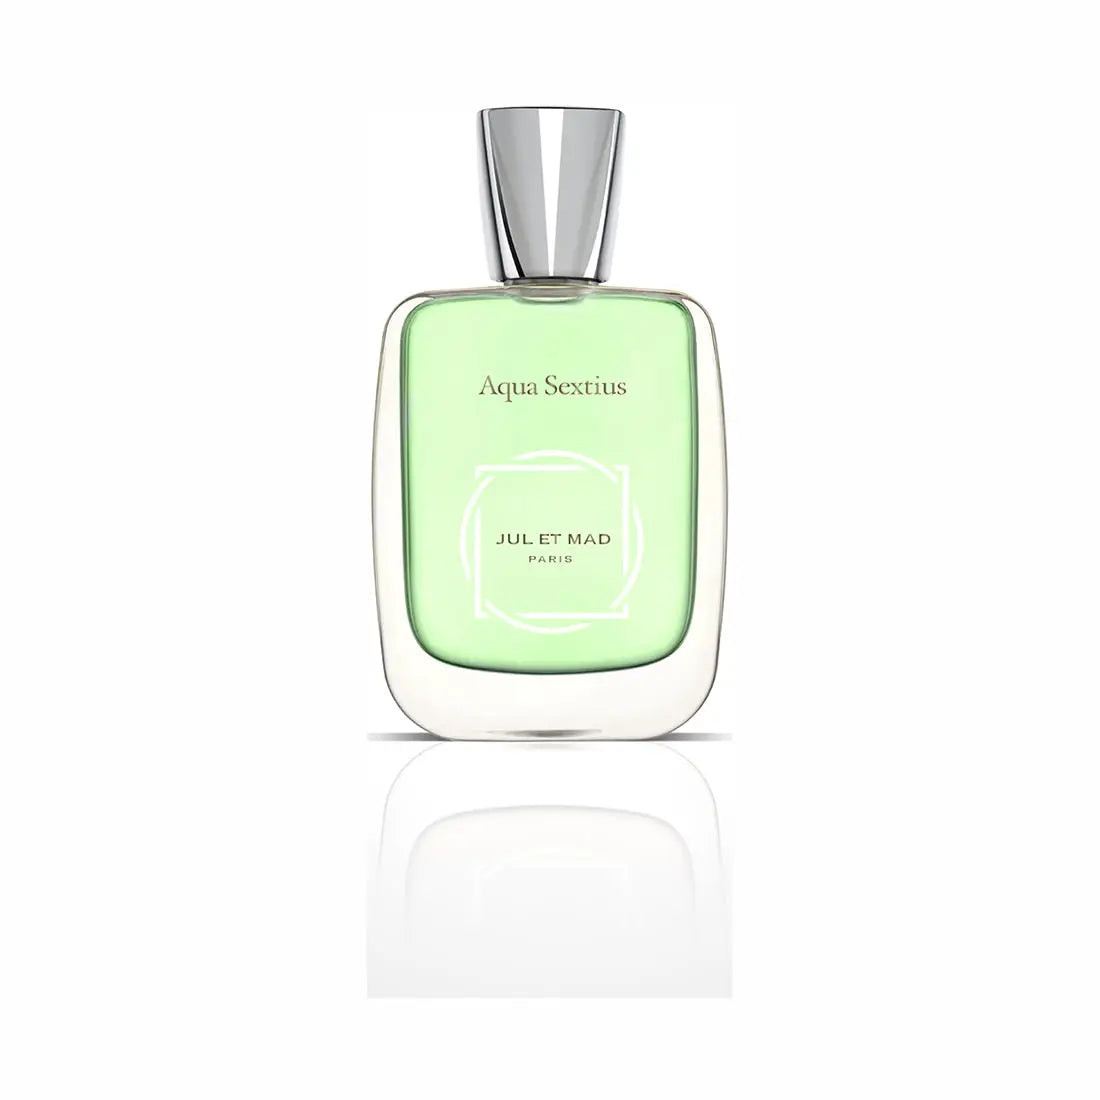 Jul et Mad Paris Aqua Sextius Extrait de Parfum 50 ml + 7 - 